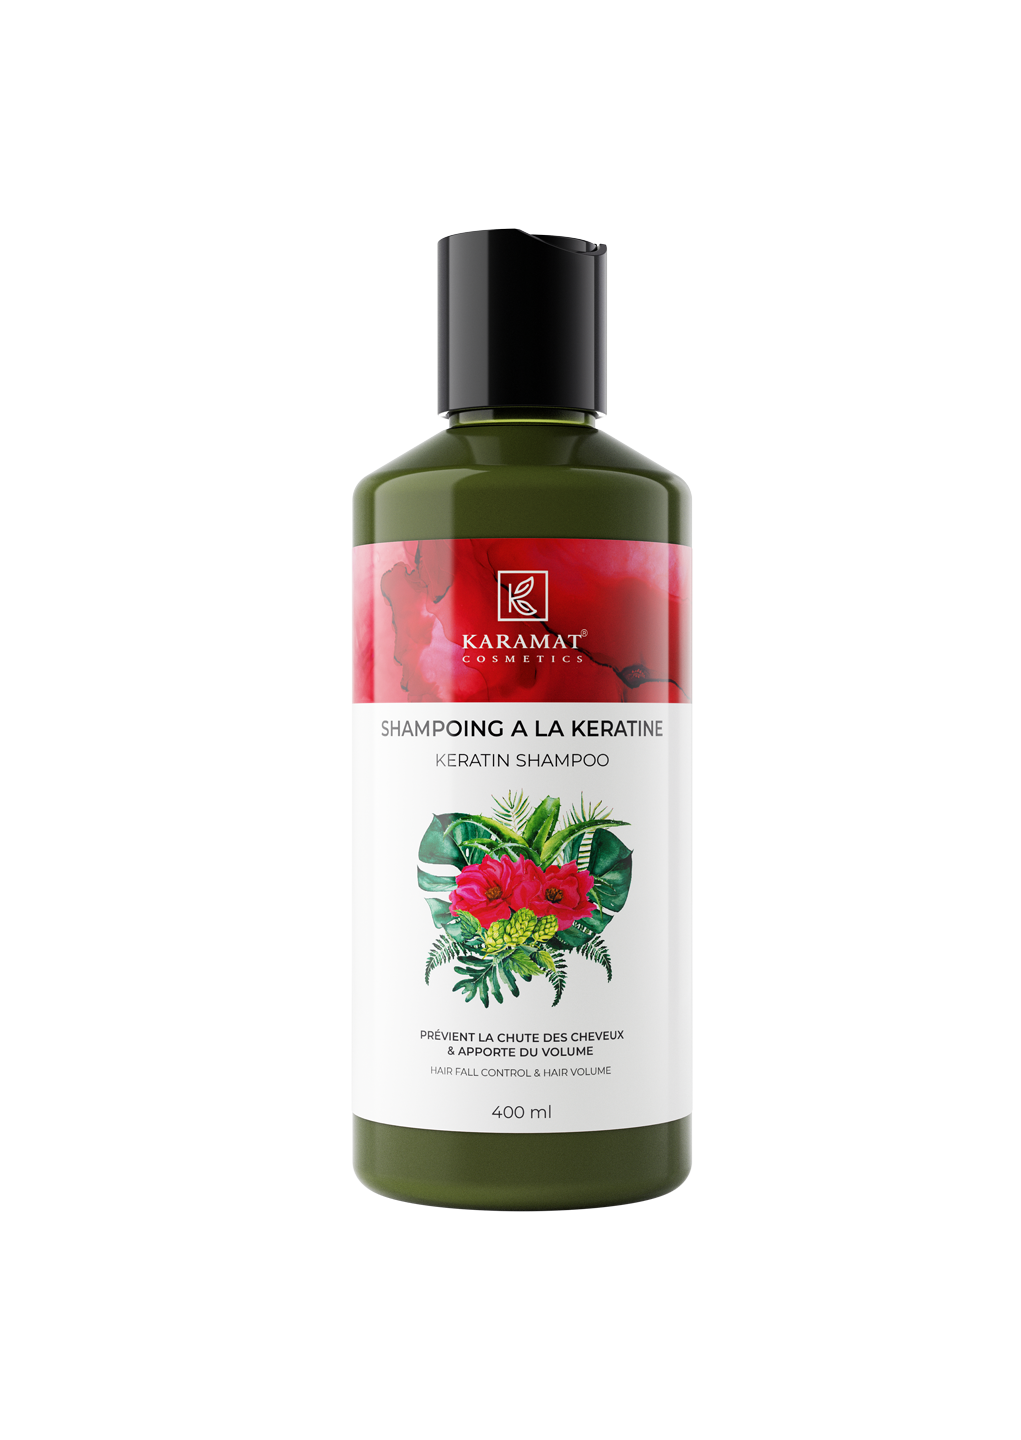 shampooing-a-la-keratine-karamat-cosmetics-400-ml-controle-la-chute-de-cheveux-et-apporte-volume